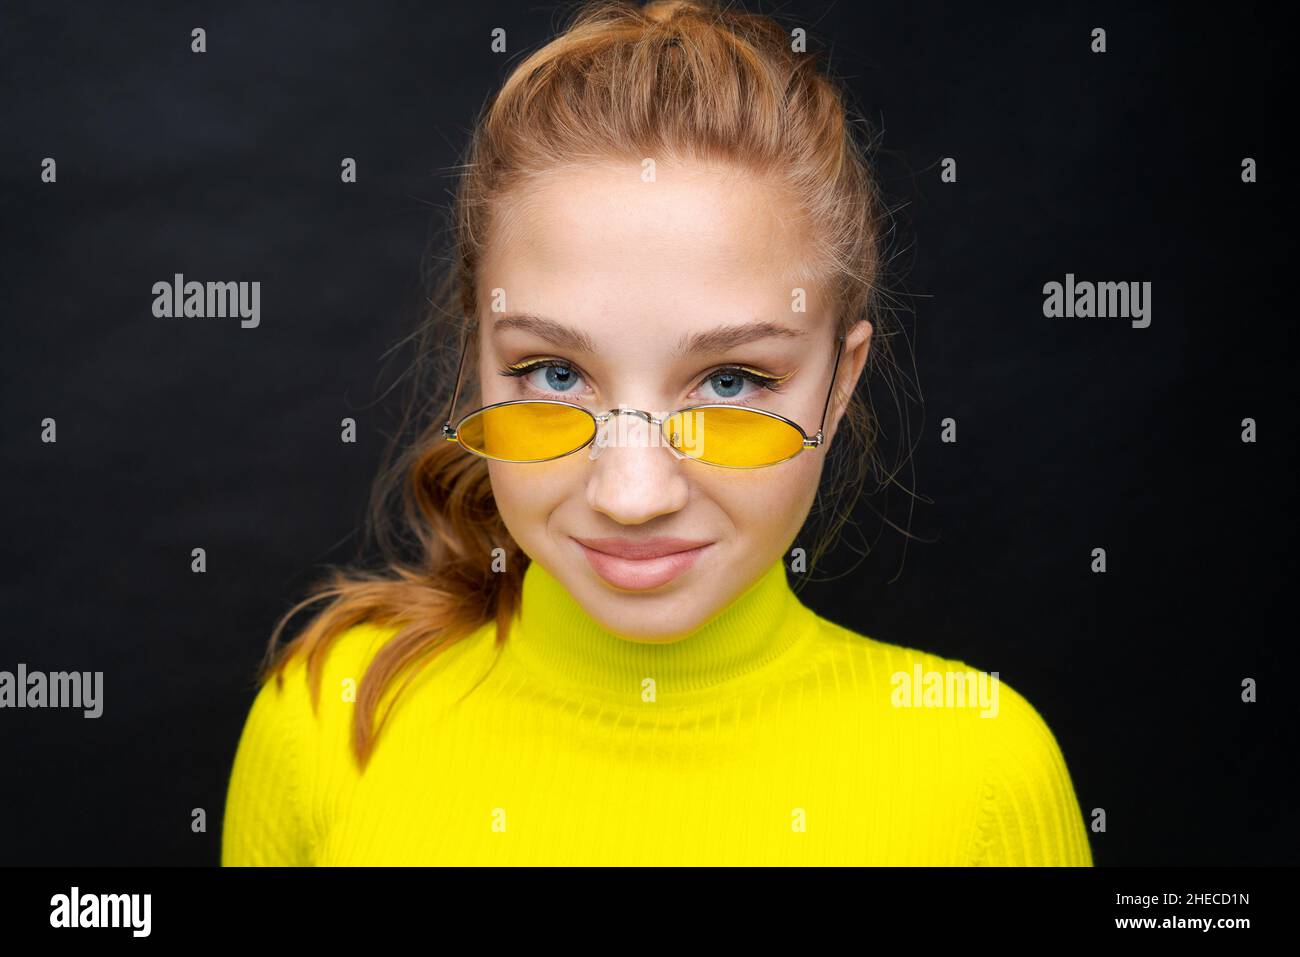 Close-up Portrait glückliches junges Mädchen mit blonden Haaren, schaut durch gelbe Brille, in einem gelben Pullover, ist in guter Stimmung auf schwarzem Hintergrund. Kaukasische Frau Teenager Stockfoto